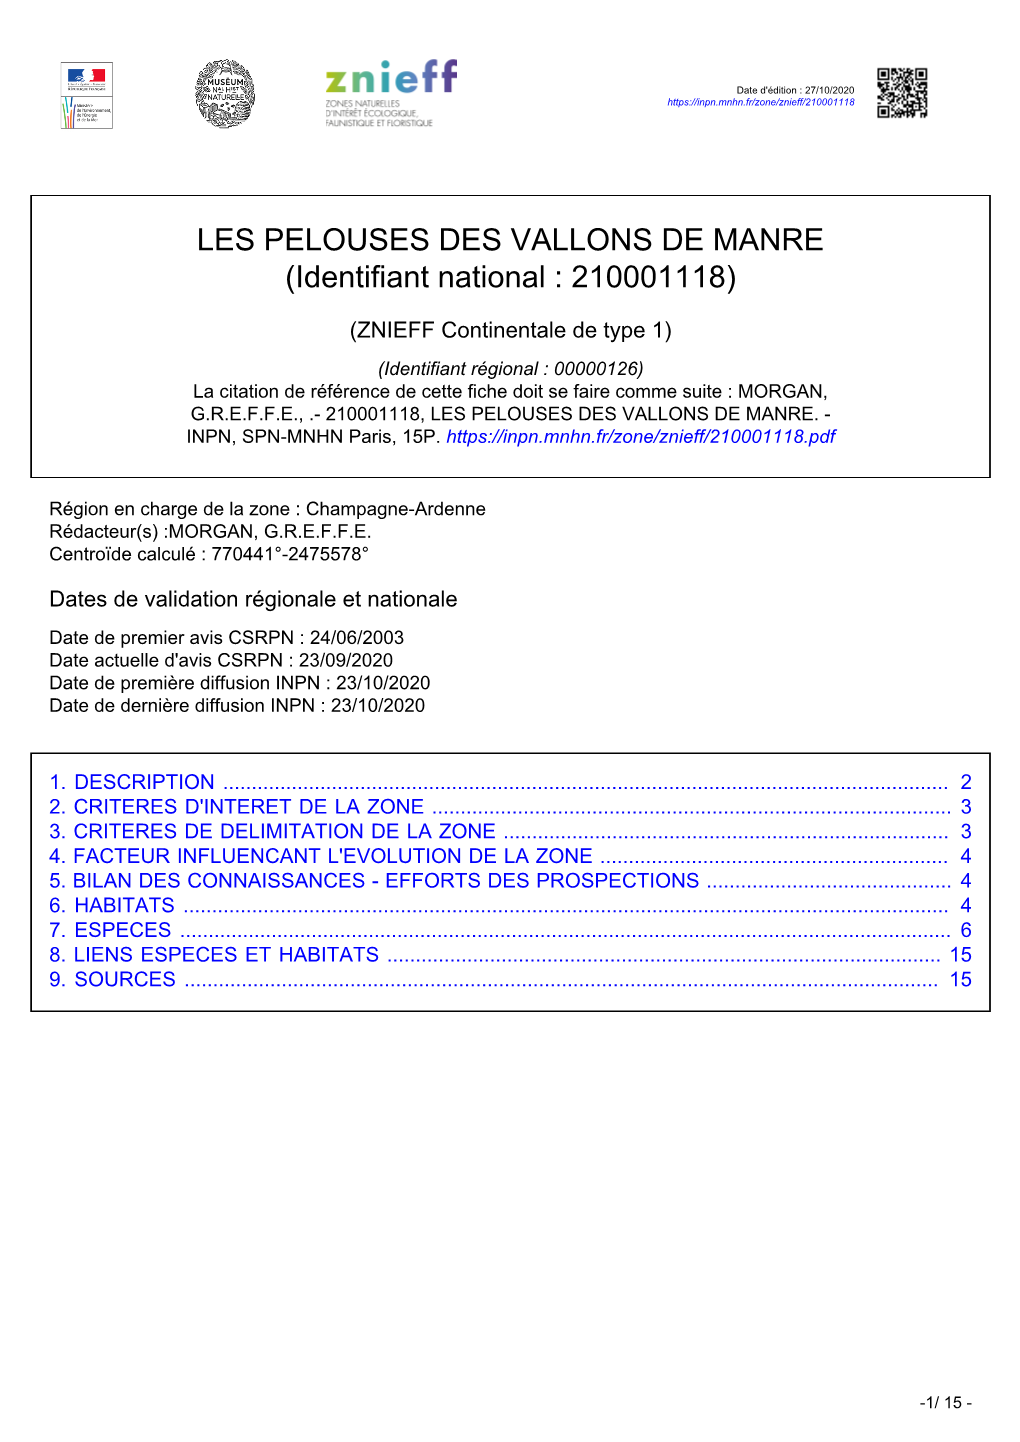 LES PELOUSES DES VALLONS DE MANRE (Identifiant National : 210001118)